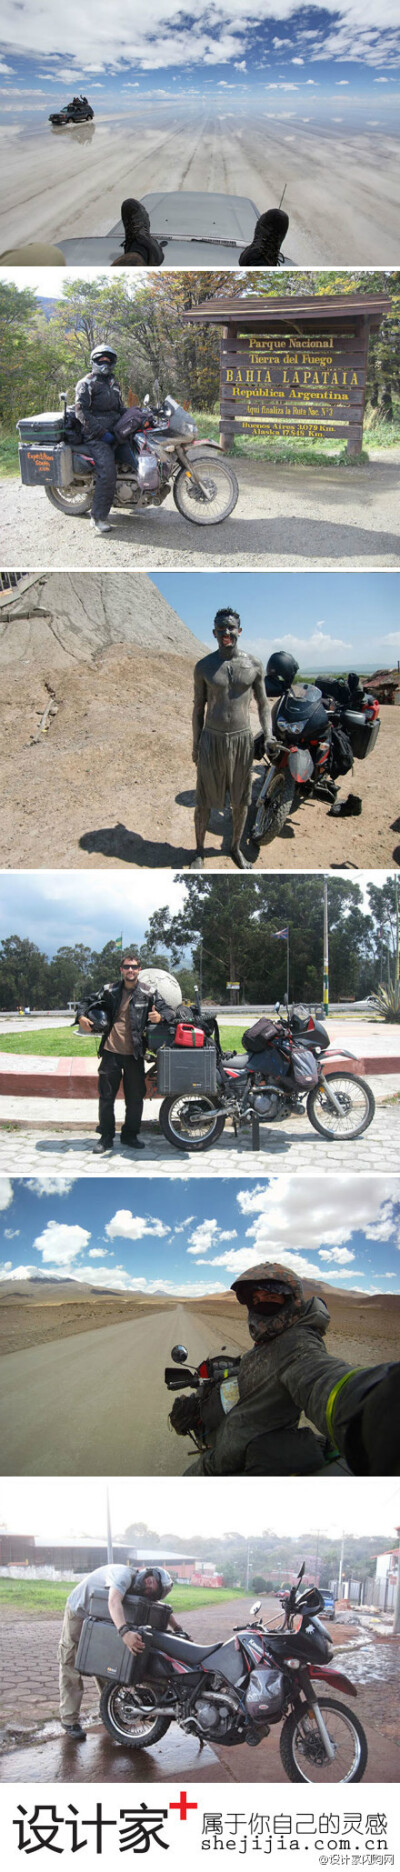 #设计家正能量#【一辆车、一个人“现代版摩托车日记”】Alex Chacon满腔热血的完成了将近82500公里与一辆摩托车的旅程，并通过摄影写下了现代摩托车日记的冒险故事